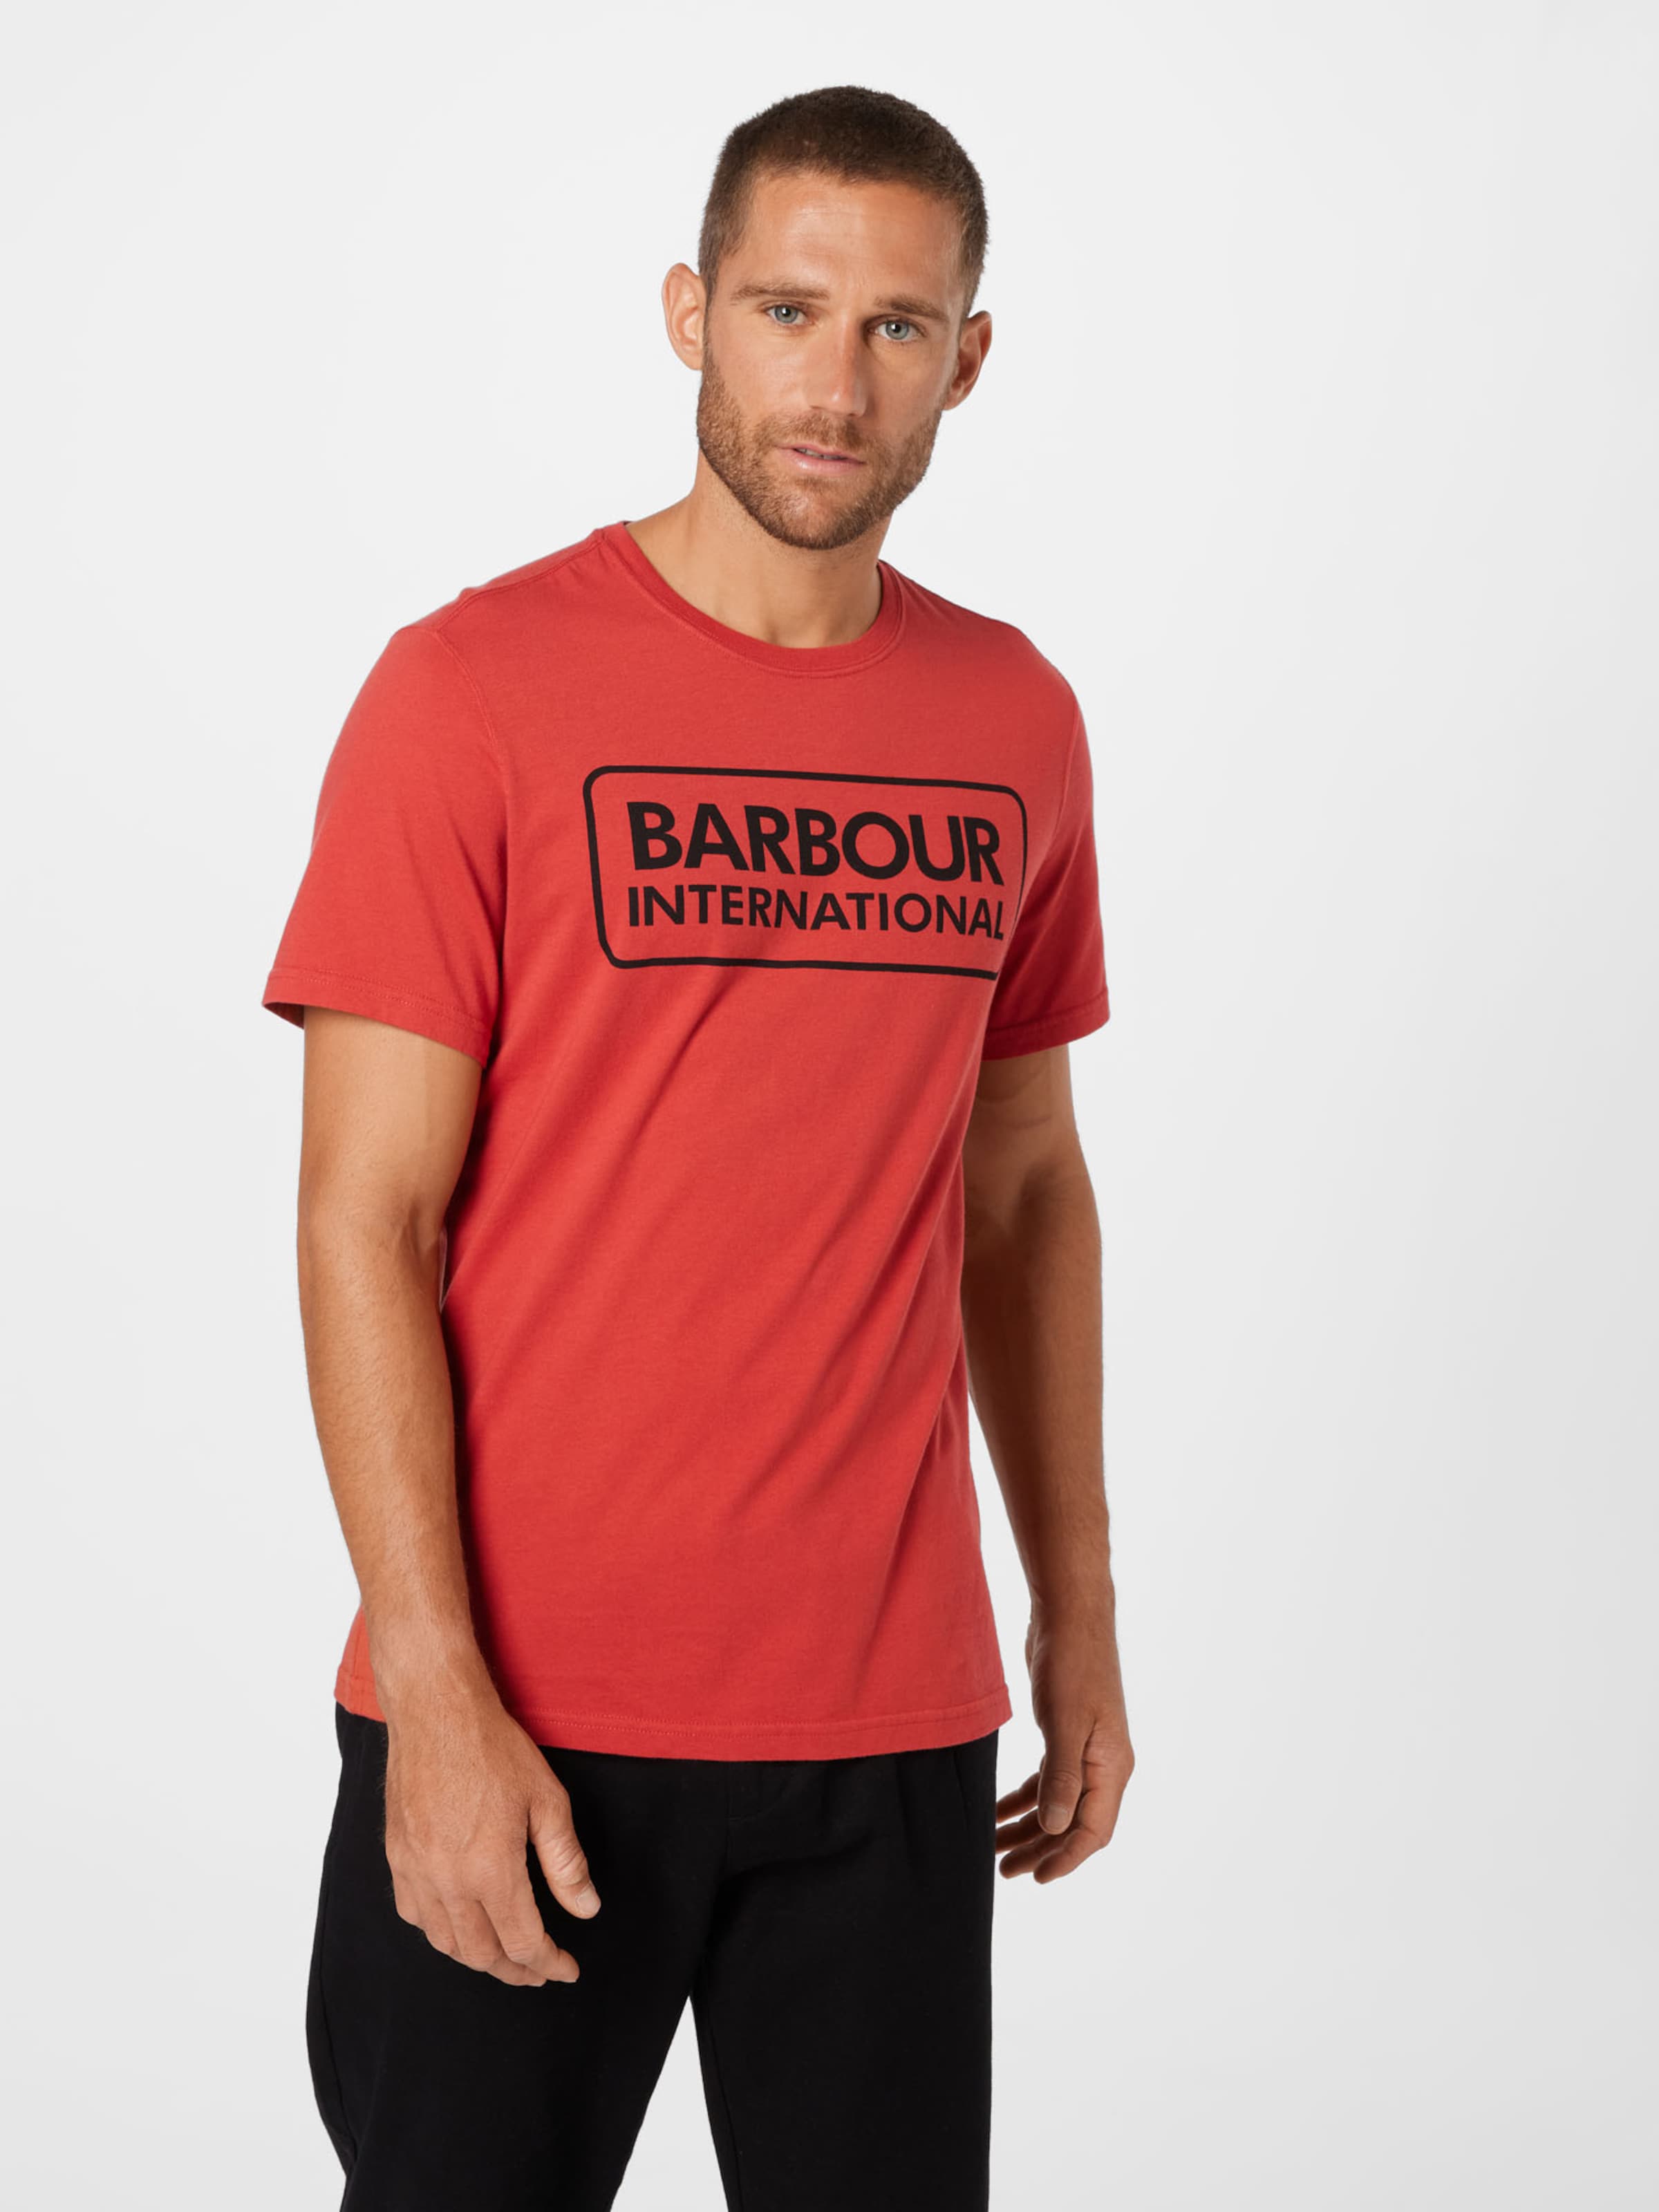 Männer Shirts Barbour International T-Shirt in Rot - CP87708